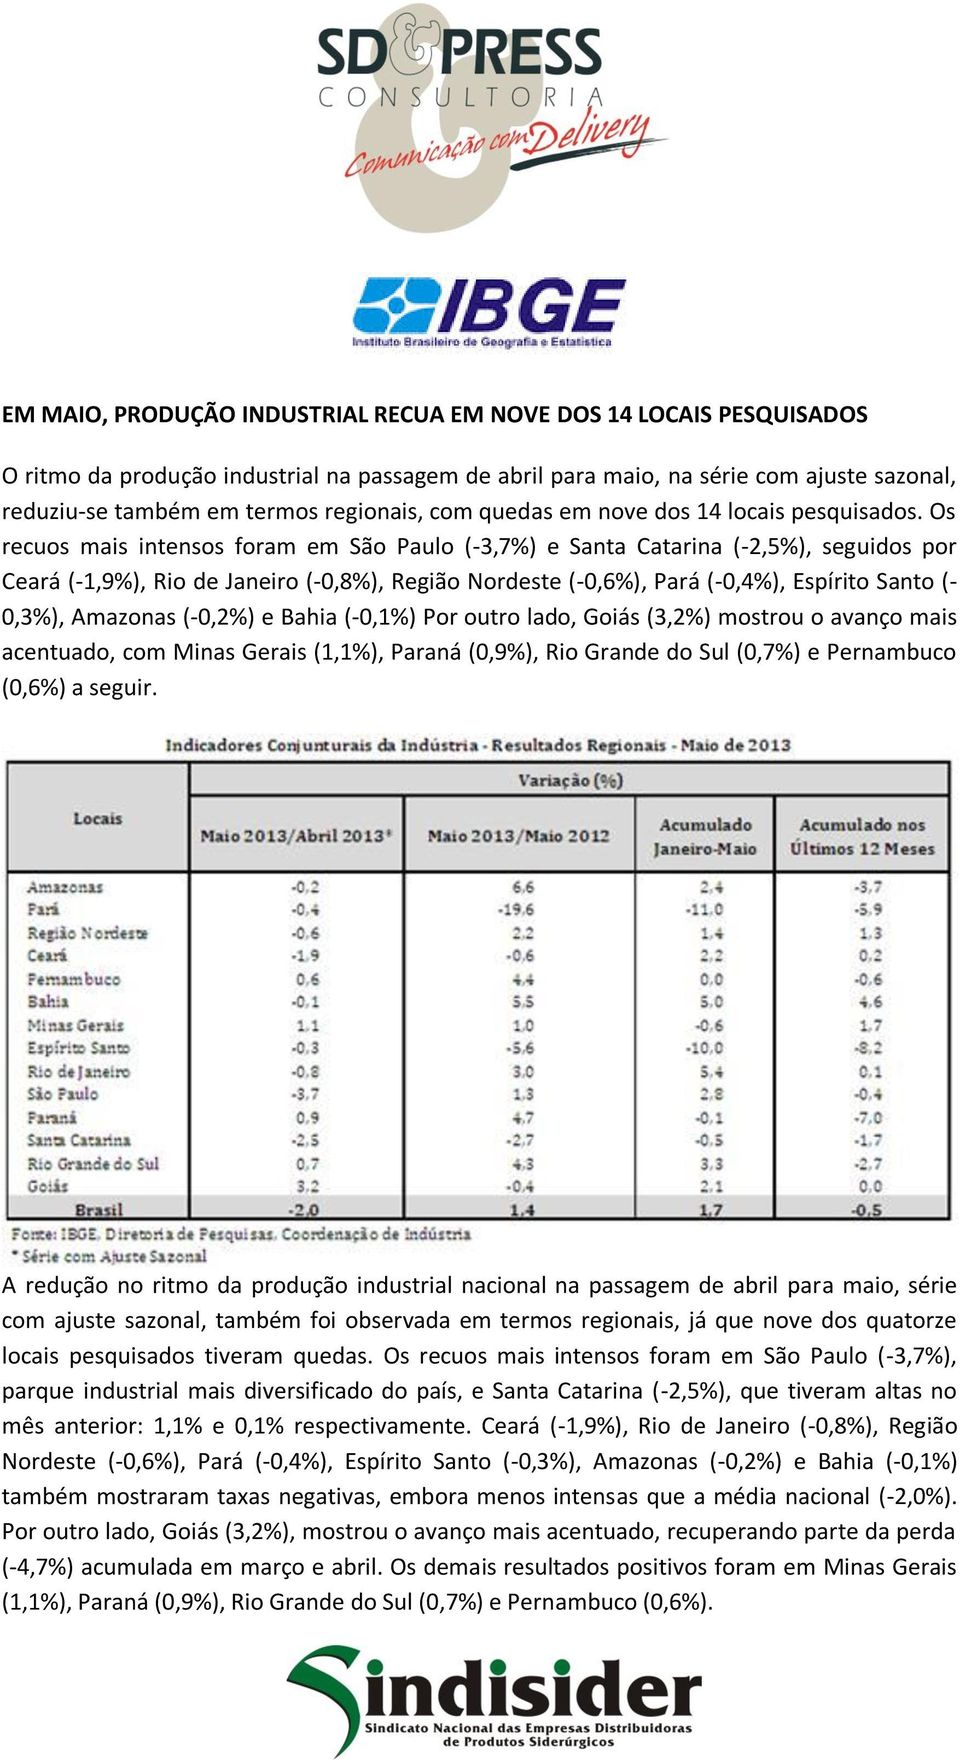 Os recuos mais intensos foram em São Paulo (-3,7%) e Santa Catarina (-2,5%), seguidos por Ceará (-1,9%), Rio de Janeiro (-0,8%), Região Nordeste (-0,6%), Pará (-0,4%), Espírito Santo (- 0,3%),